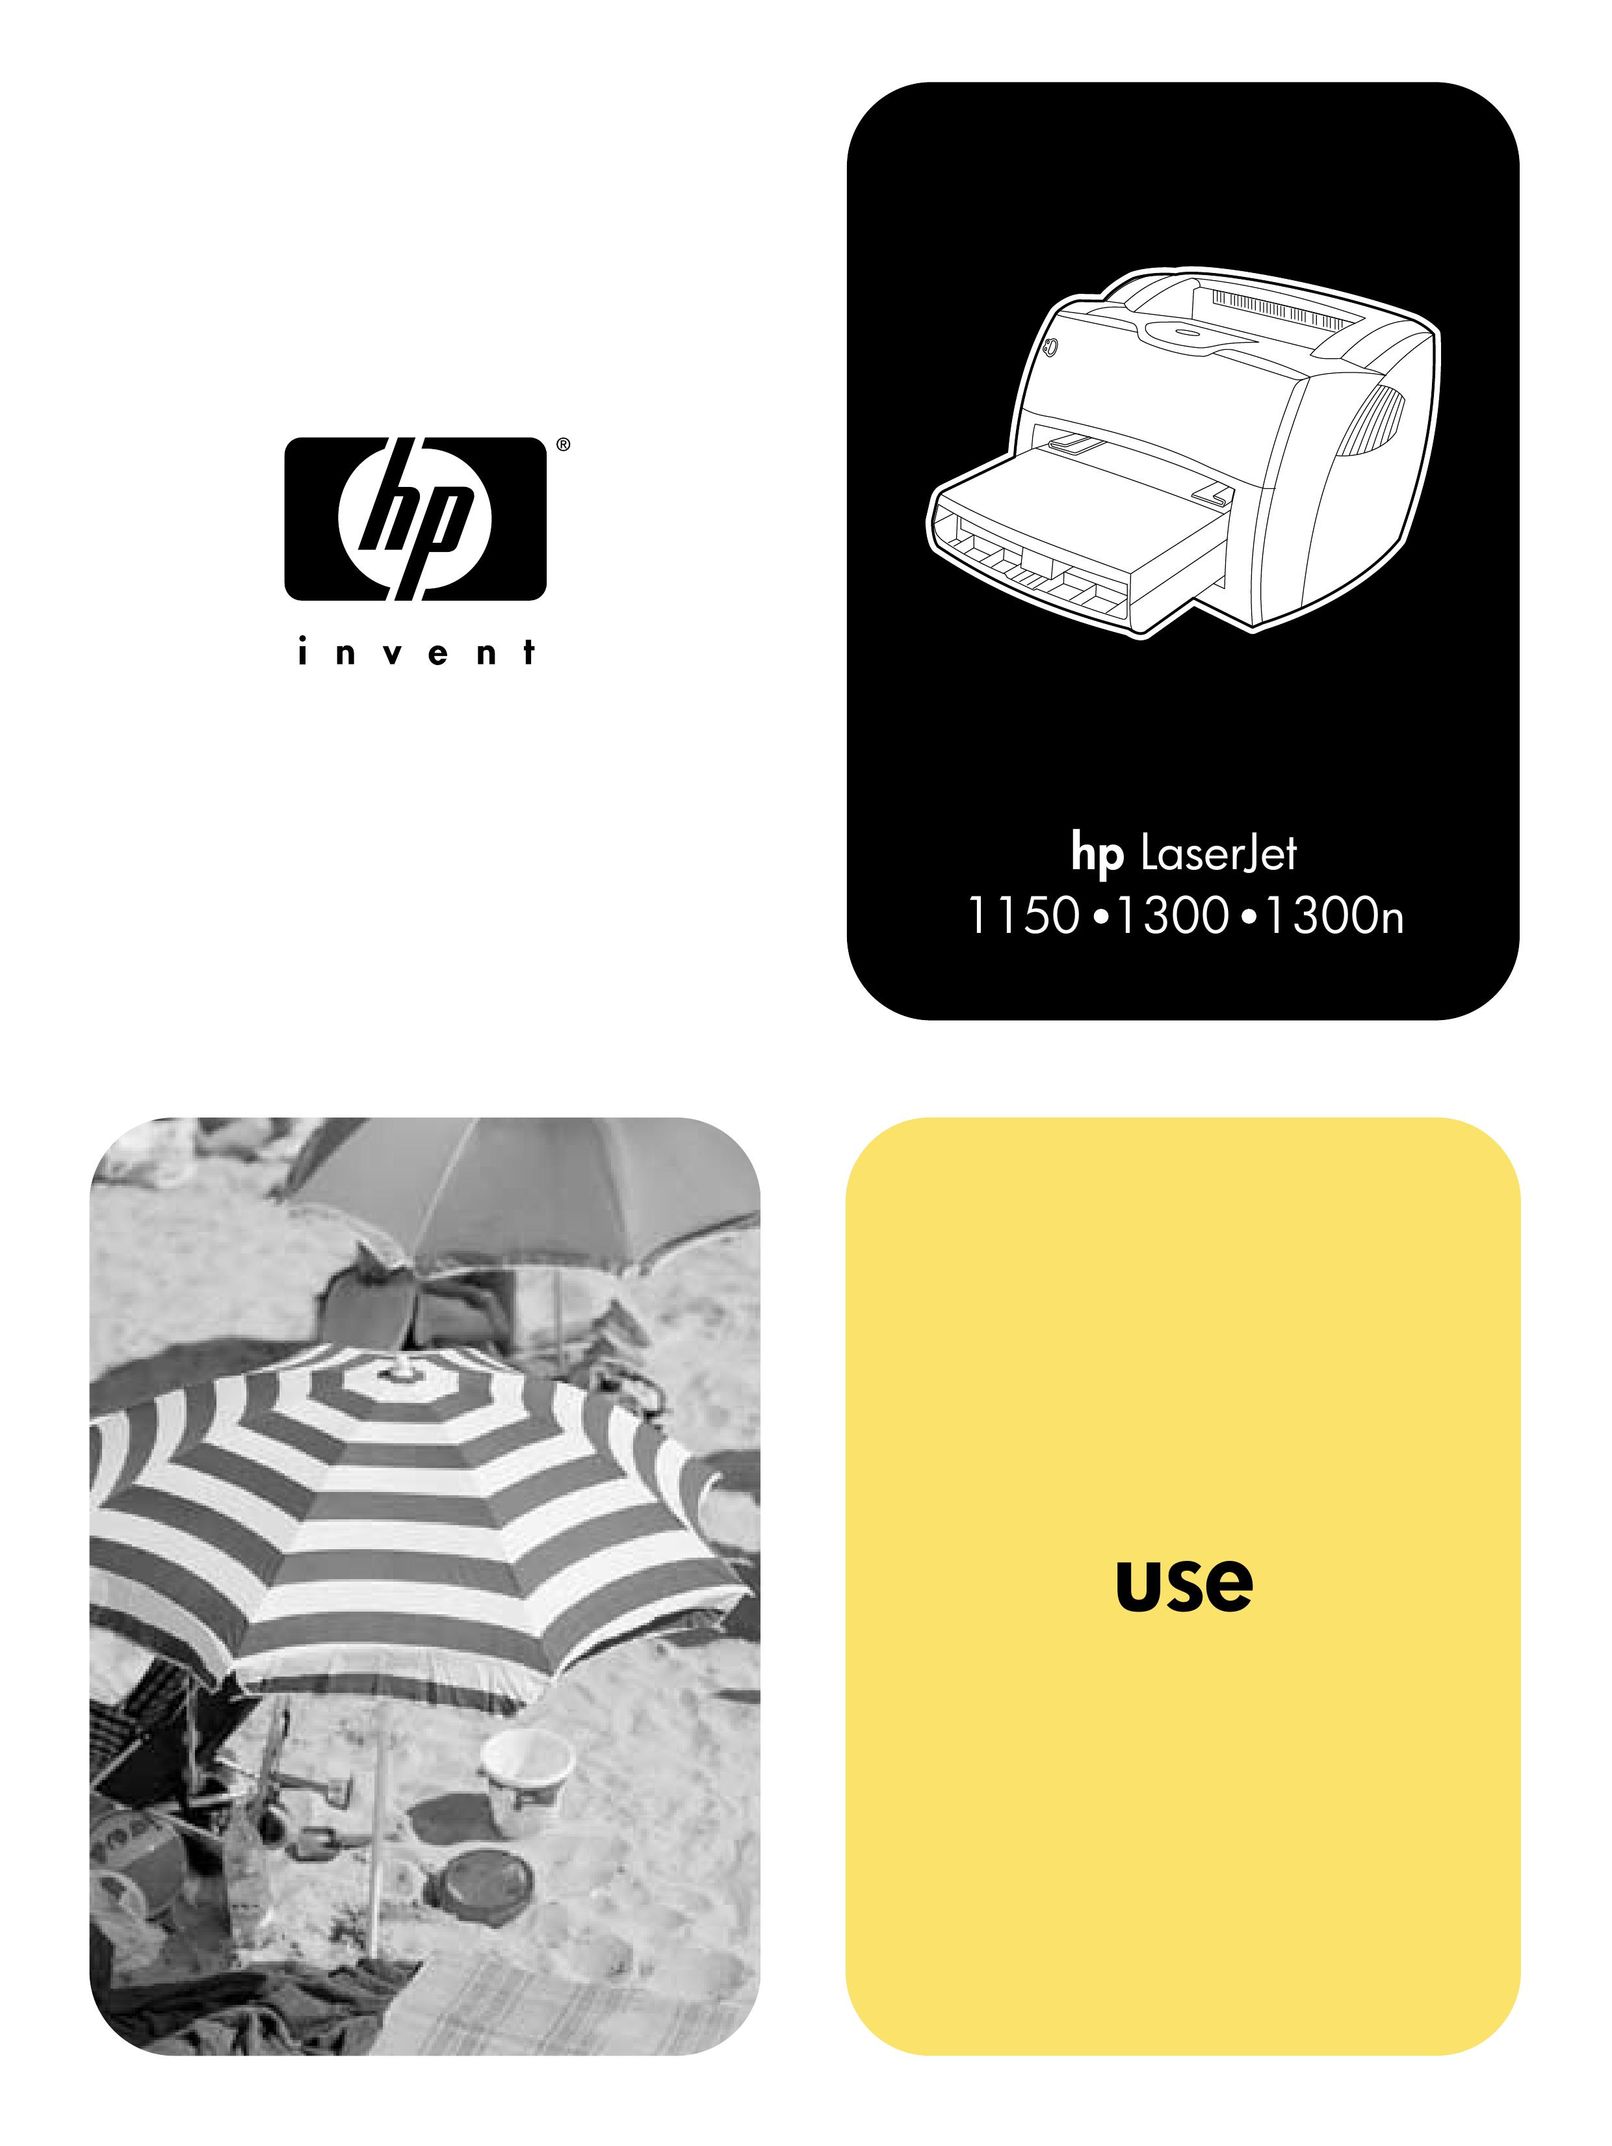 HP (Hewlett-Packard) 1150 Printer User Manual